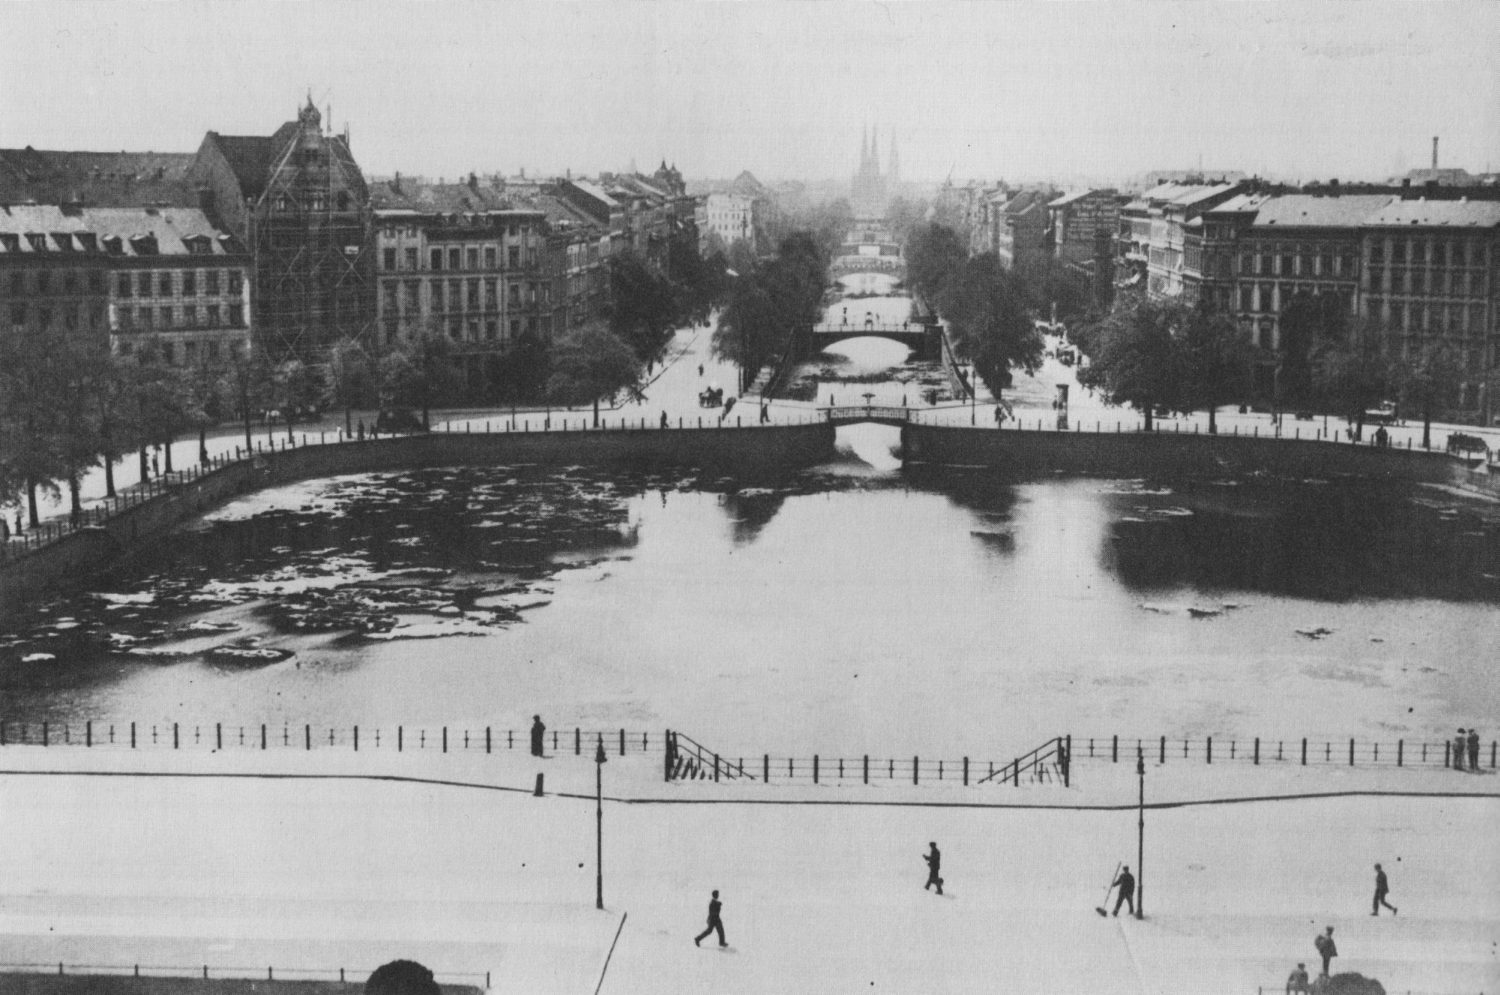 Luisenstädtischer Kanal um 1900, als das Kreuzberger Engelbecken mit Wasser gefüllt war. Die Anlage geht auf den Stadtplaner Lenné zurück. Foto: gemeinfrei